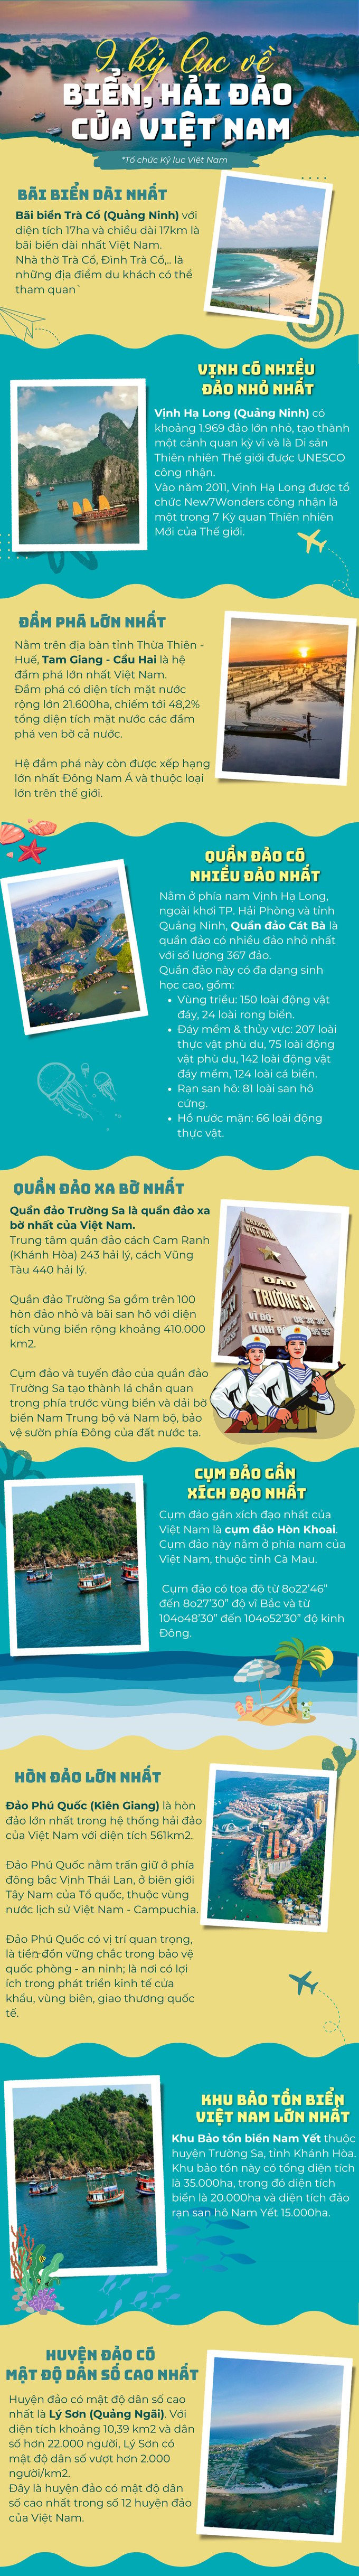 9 kỷ lục của biển, hải đảo Việt Nam 2